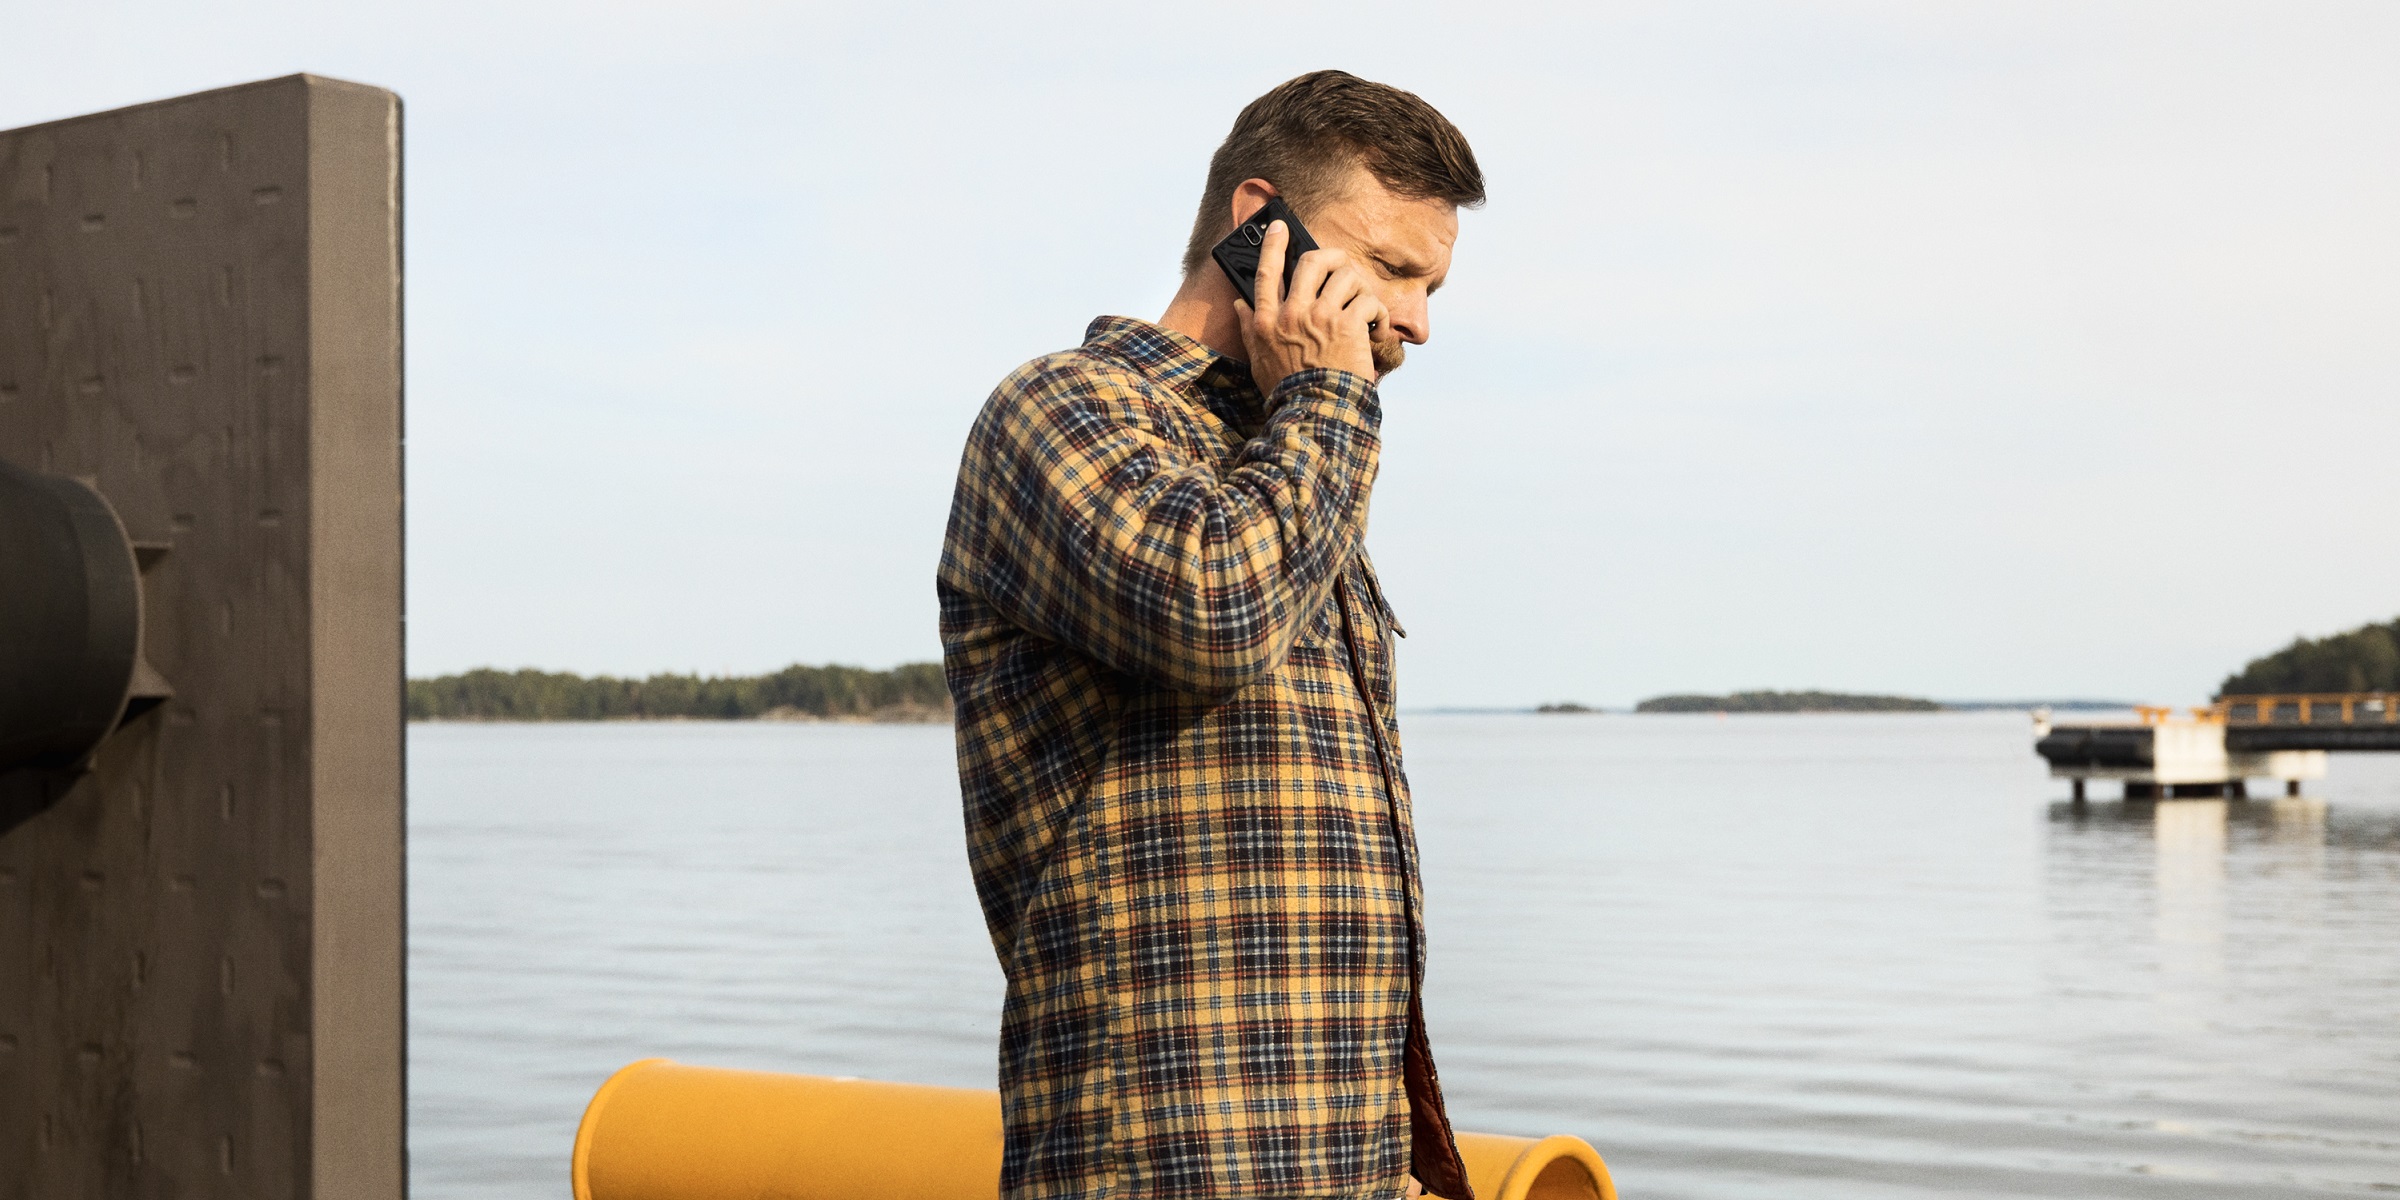 Ruutupaitainen mies laiturilla, puhuu kännykkään, taustalla järvi.